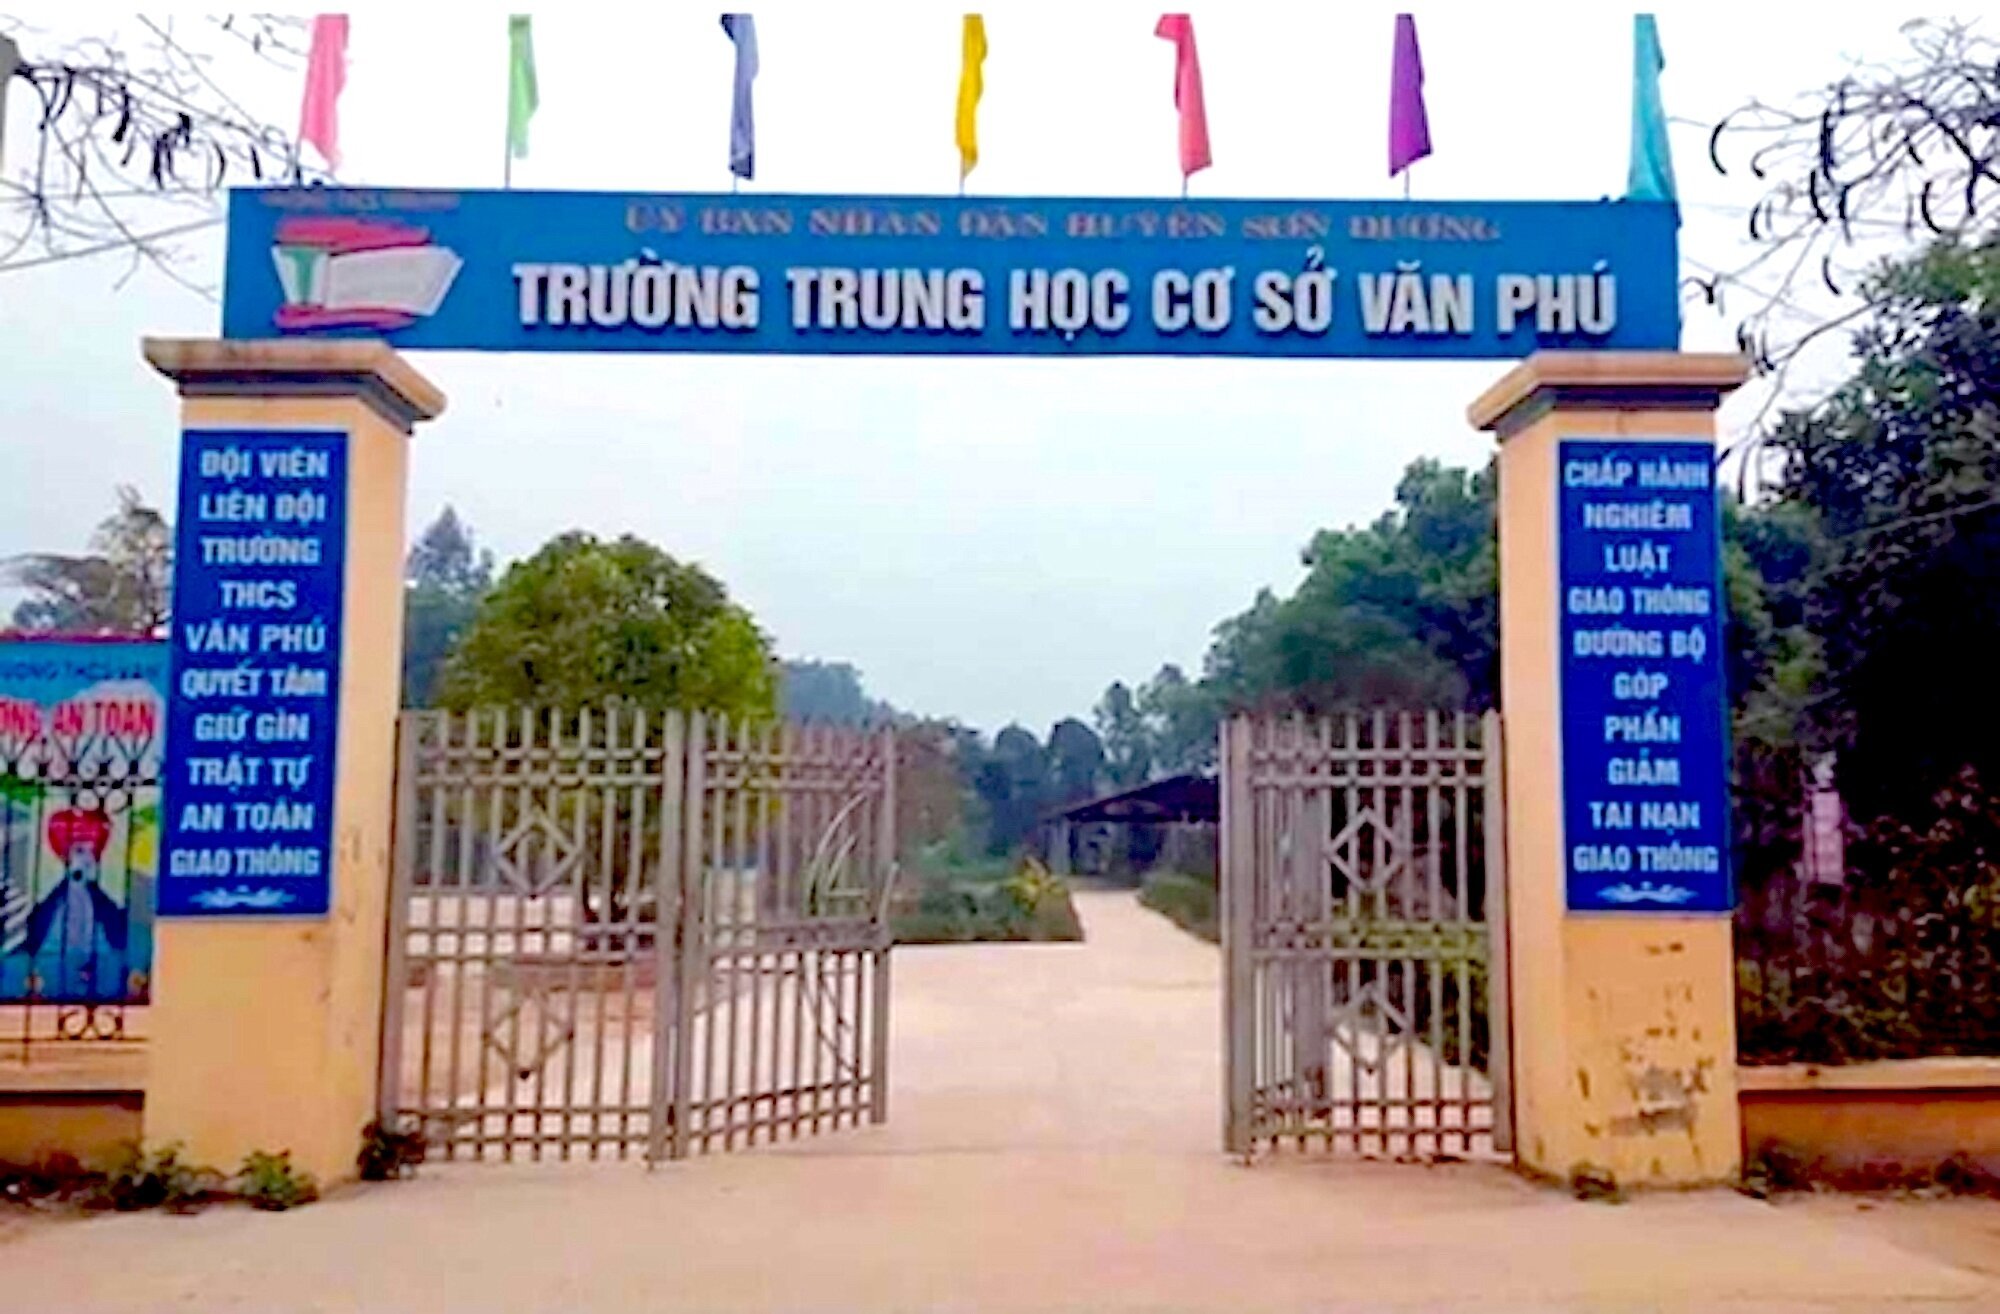 Trường THCS Văn Phú (Tuyên Quang) -  nơi xảy ra sự việc học sinh ném dép vào mặt cô giáo.